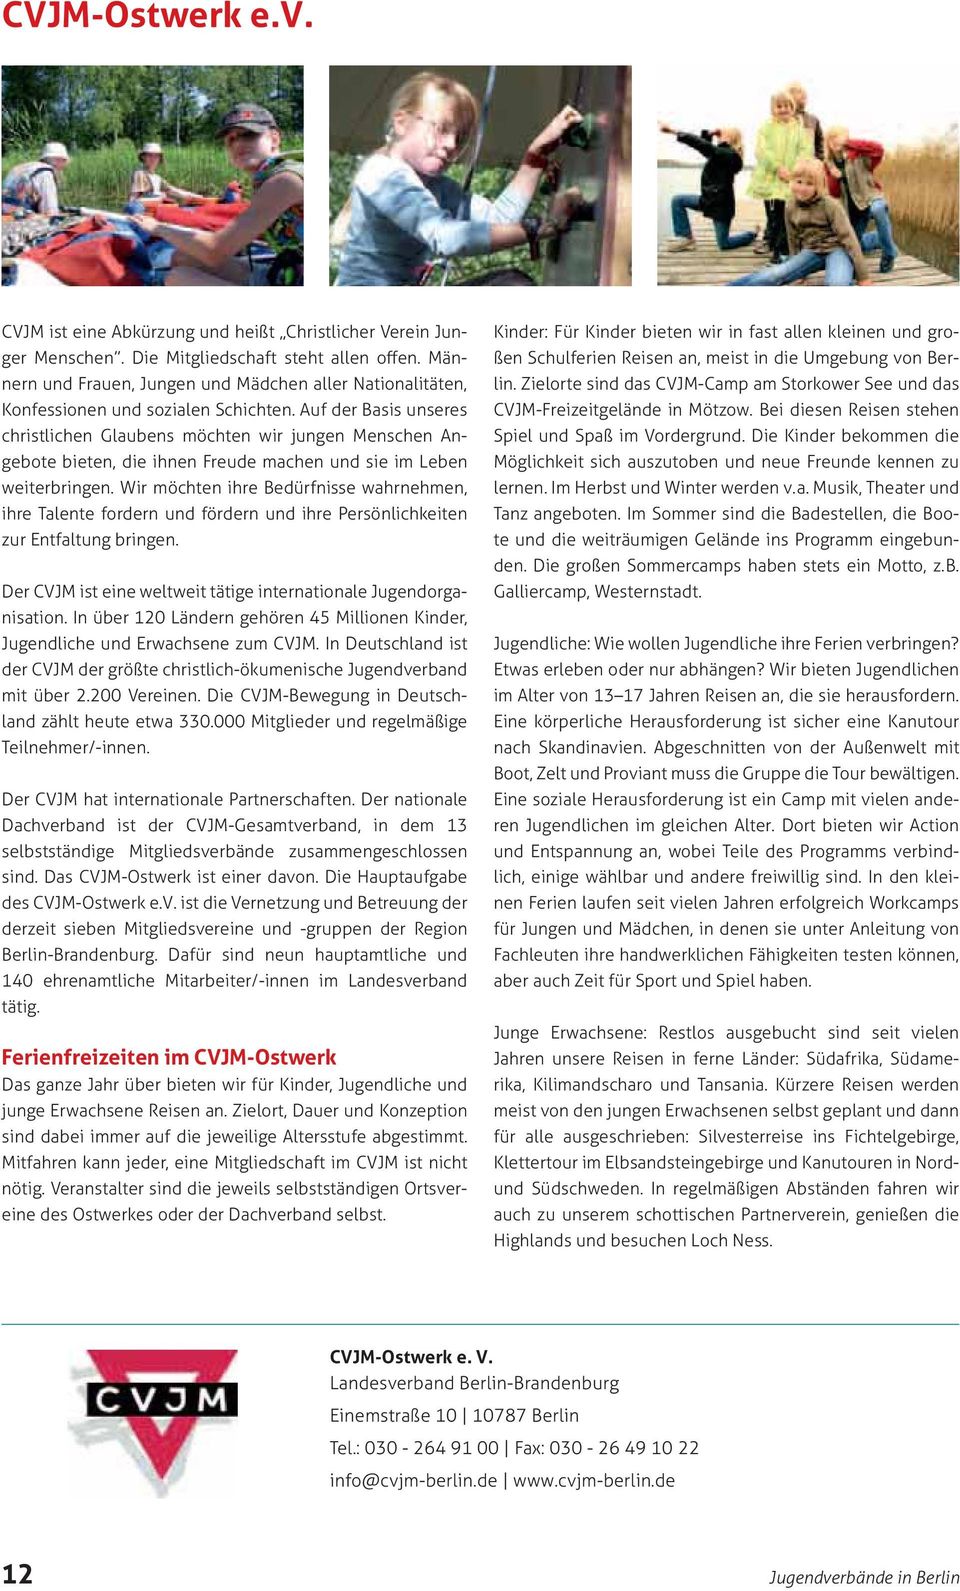 Der CVJM hat internationale Partnerschaften. Der nationale selbstständige Mitgliedsverbände zusammengeschlossen sind. Das CVJM-Ostwerk ist einer davon. Die Hauptaufgabe des CVJM-Ostwerk e.v. ist die Vernetzung und Betreuung der derzeit sieben Mitgliedsvereine und -gruppen der Region Berlin-Brandenburg.